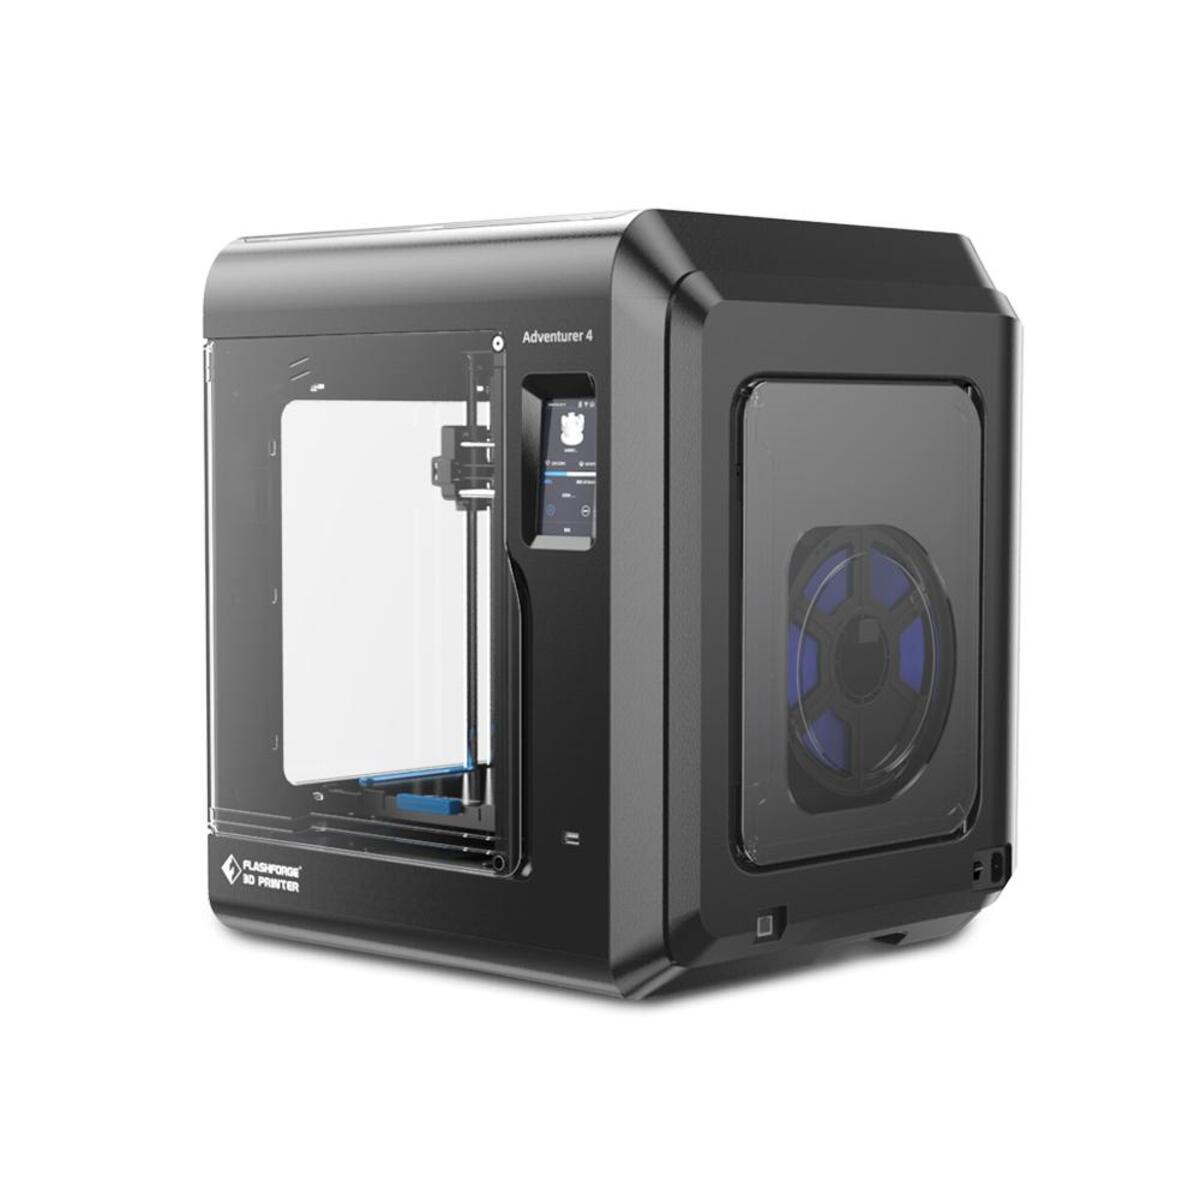 3D printer Adventurer FDM 4 FLASCHFORGE 3D Drucker